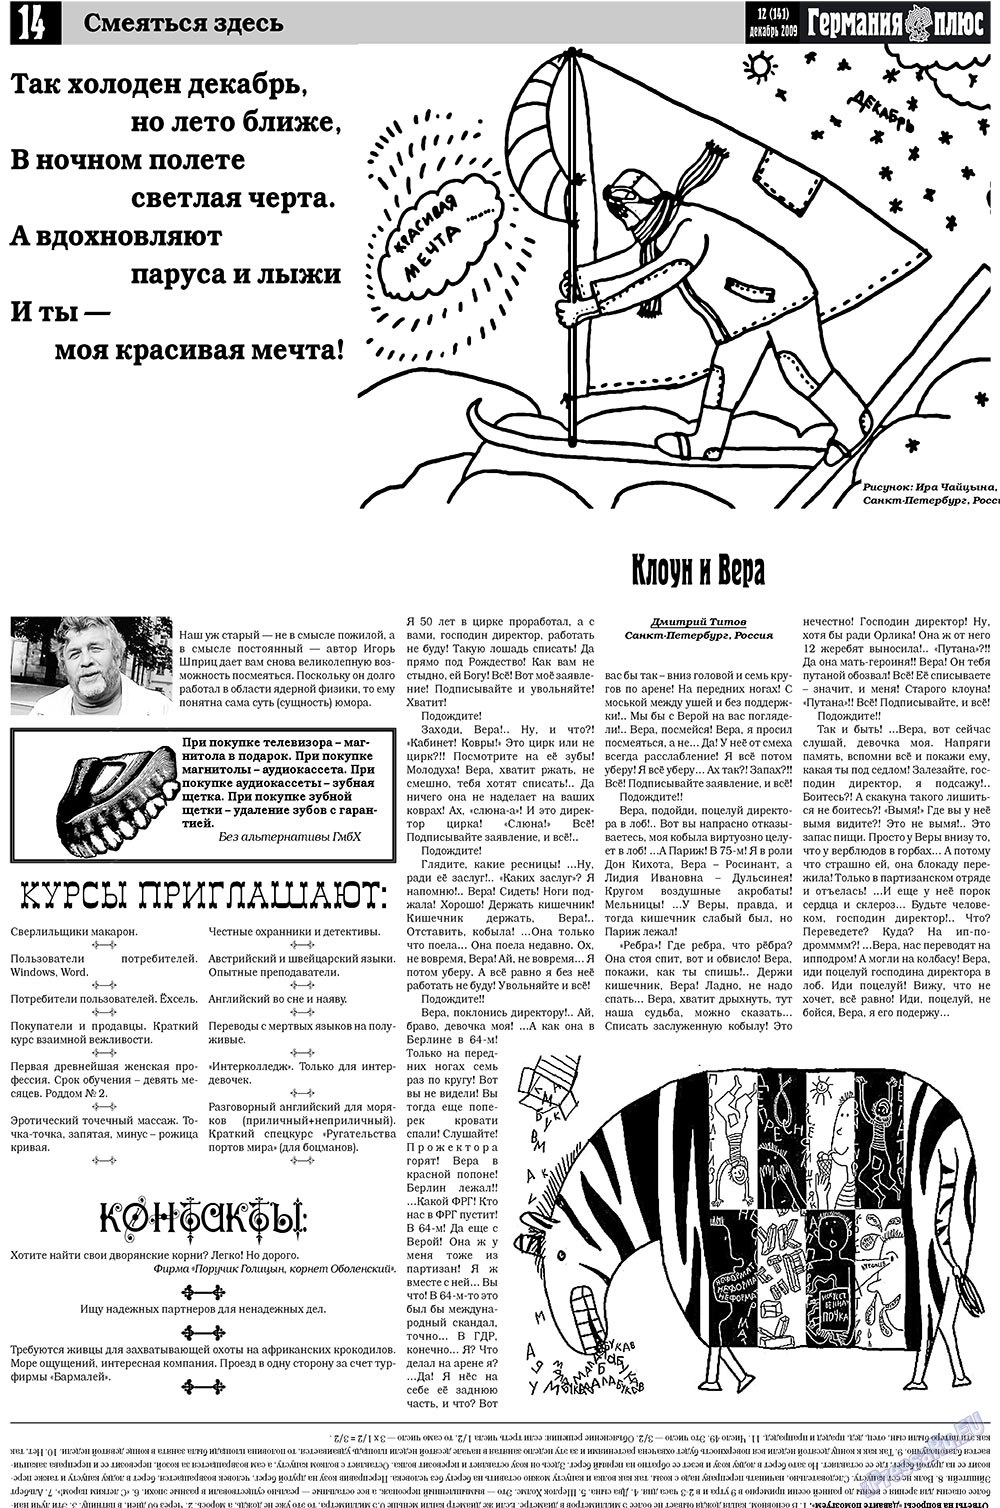 Германия плюс (газета). 2009 год, номер 12, стр. 14